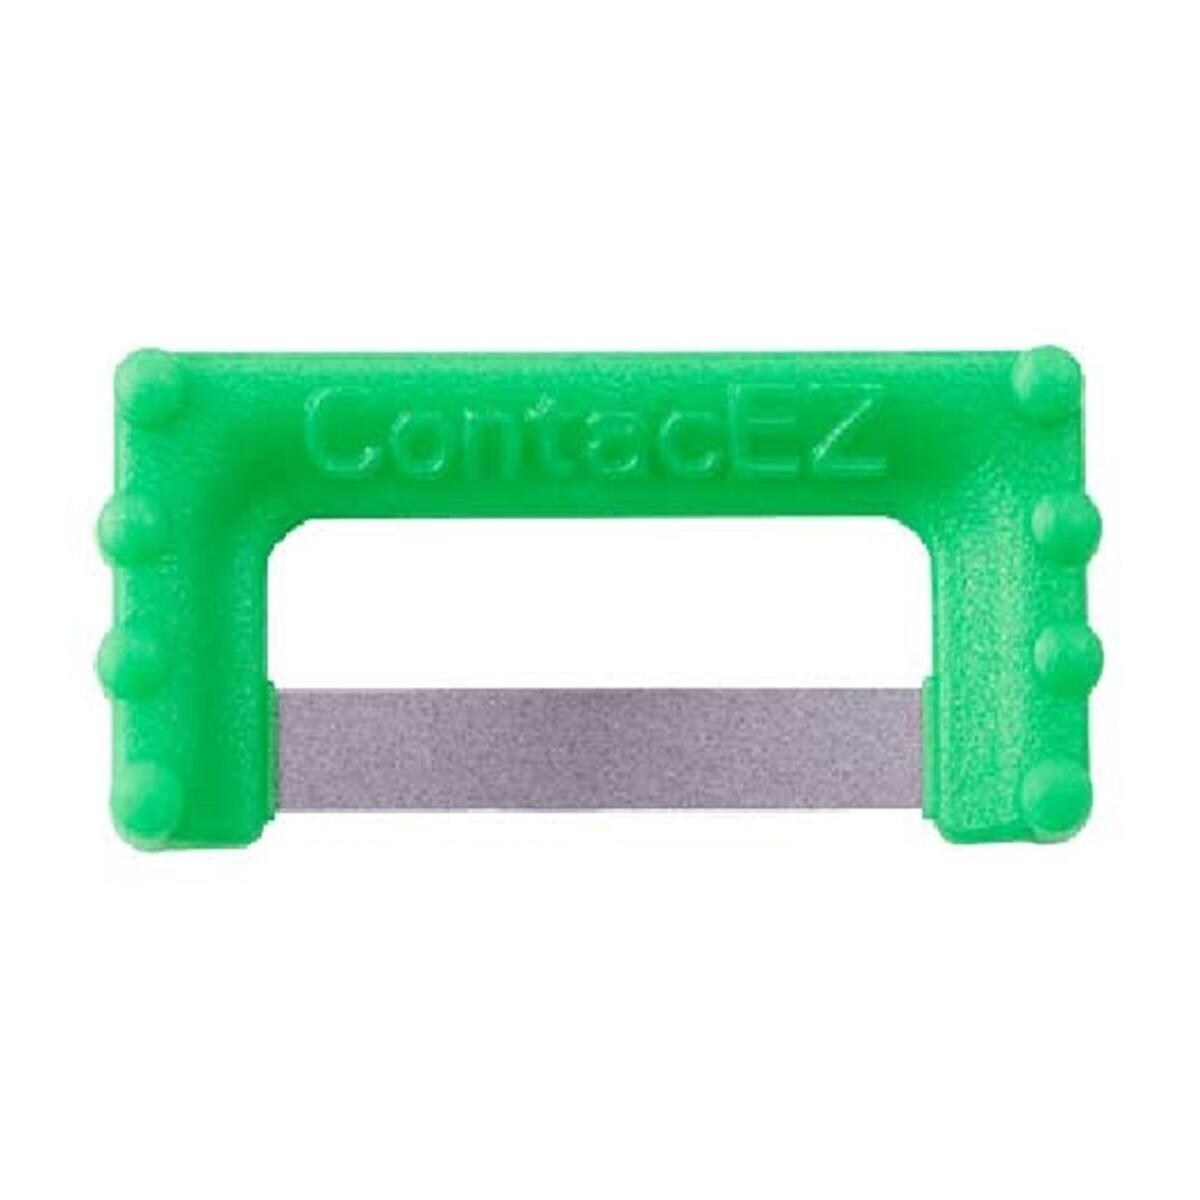 ContacEZ IPR - recharge - REF. 32608 - vert 0,20mm, 8 pcs